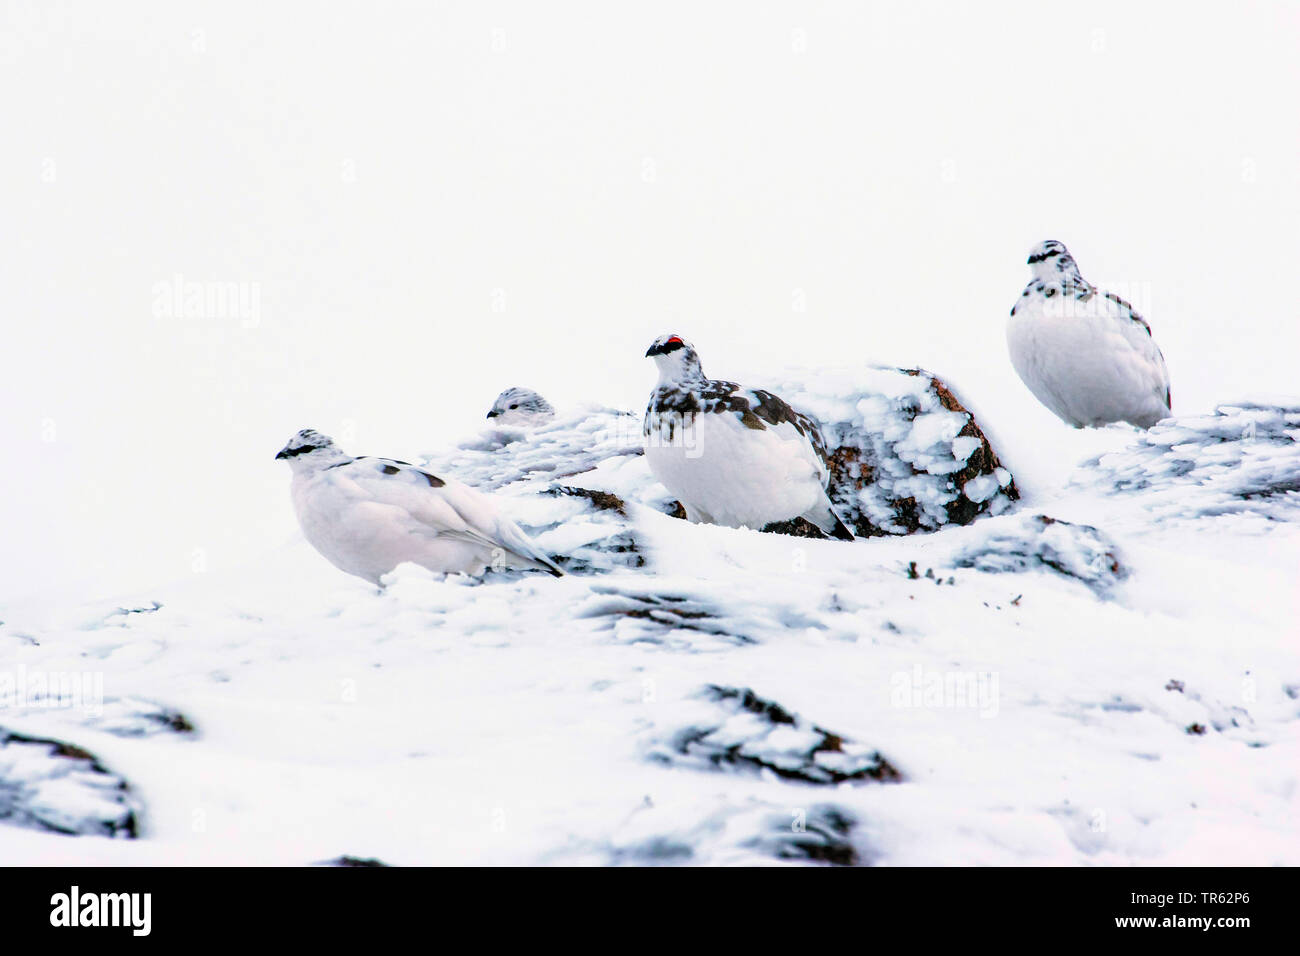 Le lagopède alpin, le poulet Neige (Lagopus mutus), troupe assis dans la neige sur un rock glacial, Royaume-Uni, Ecosse, Avimore Banque D'Images